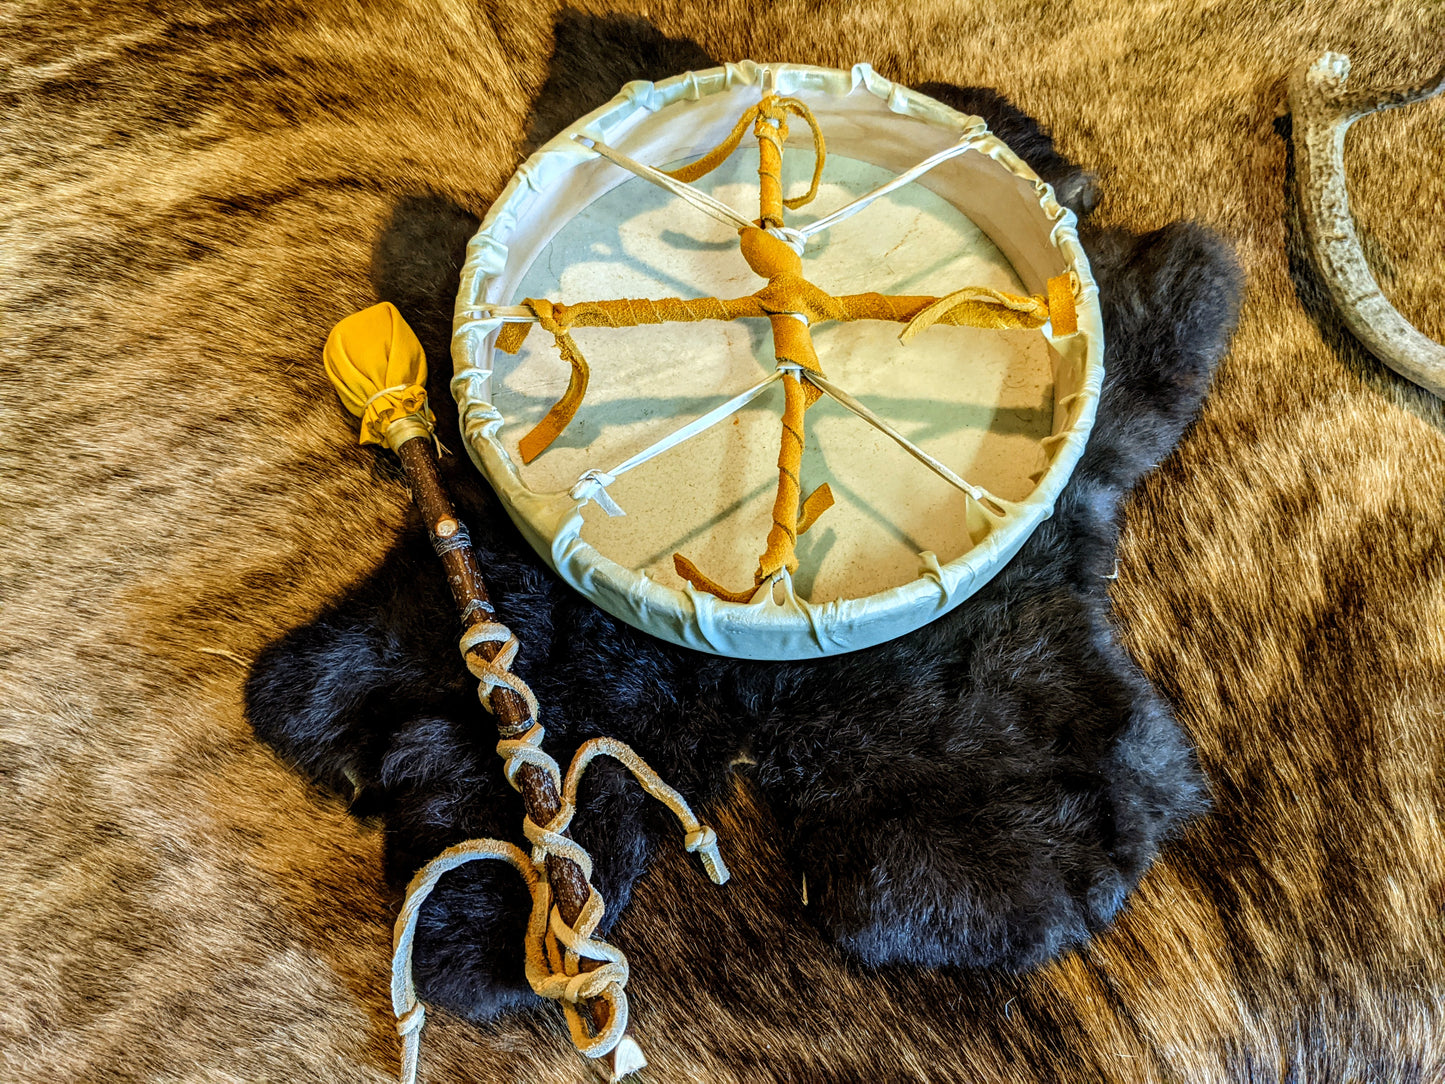 Vegvisir Deer Skin Shaman Drum 10" With Alder Branch Beater Hand Painted Norse Pagan Asatru